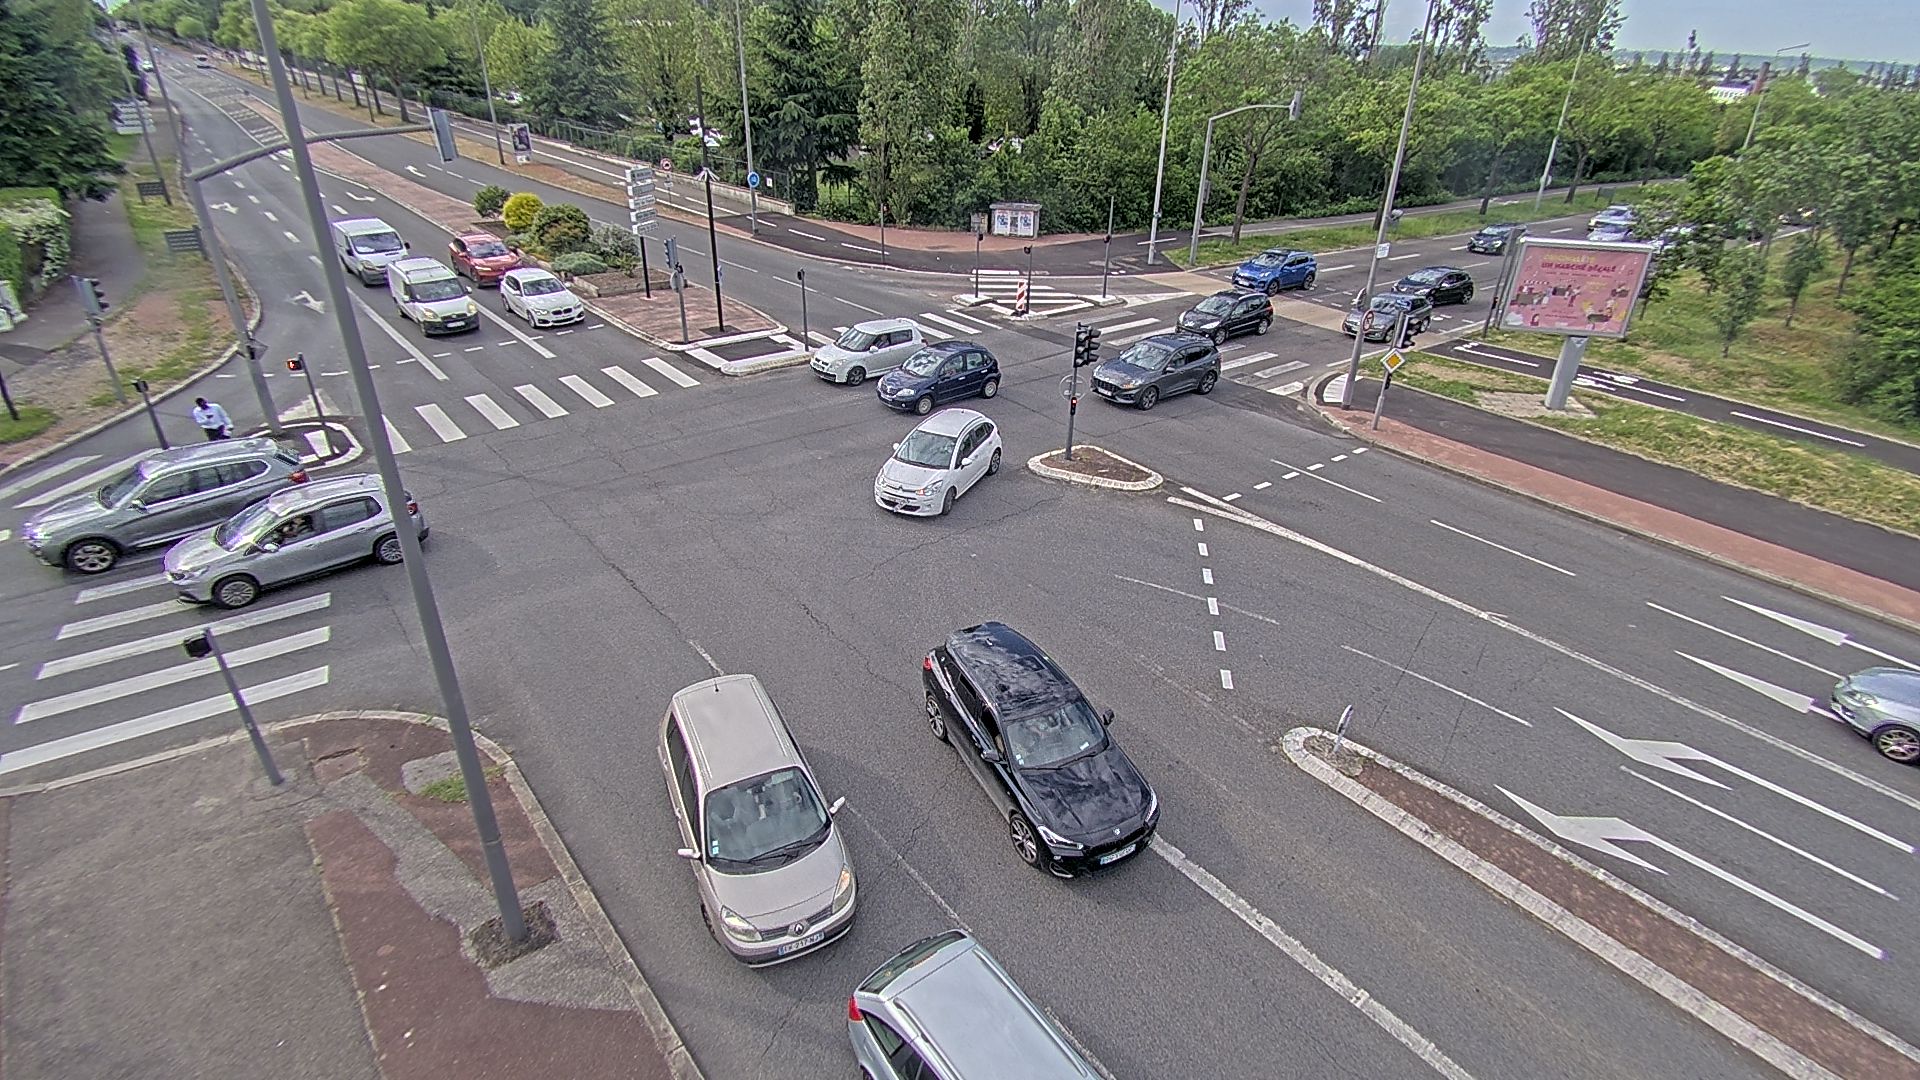 <h2>Webcam proche de l'A43 à Bron à la jonction entre le Boulevard de l'Université (D112) et l'avenue Général de Gaulle (D506). Vue orientée vers Eurexpo</h2>